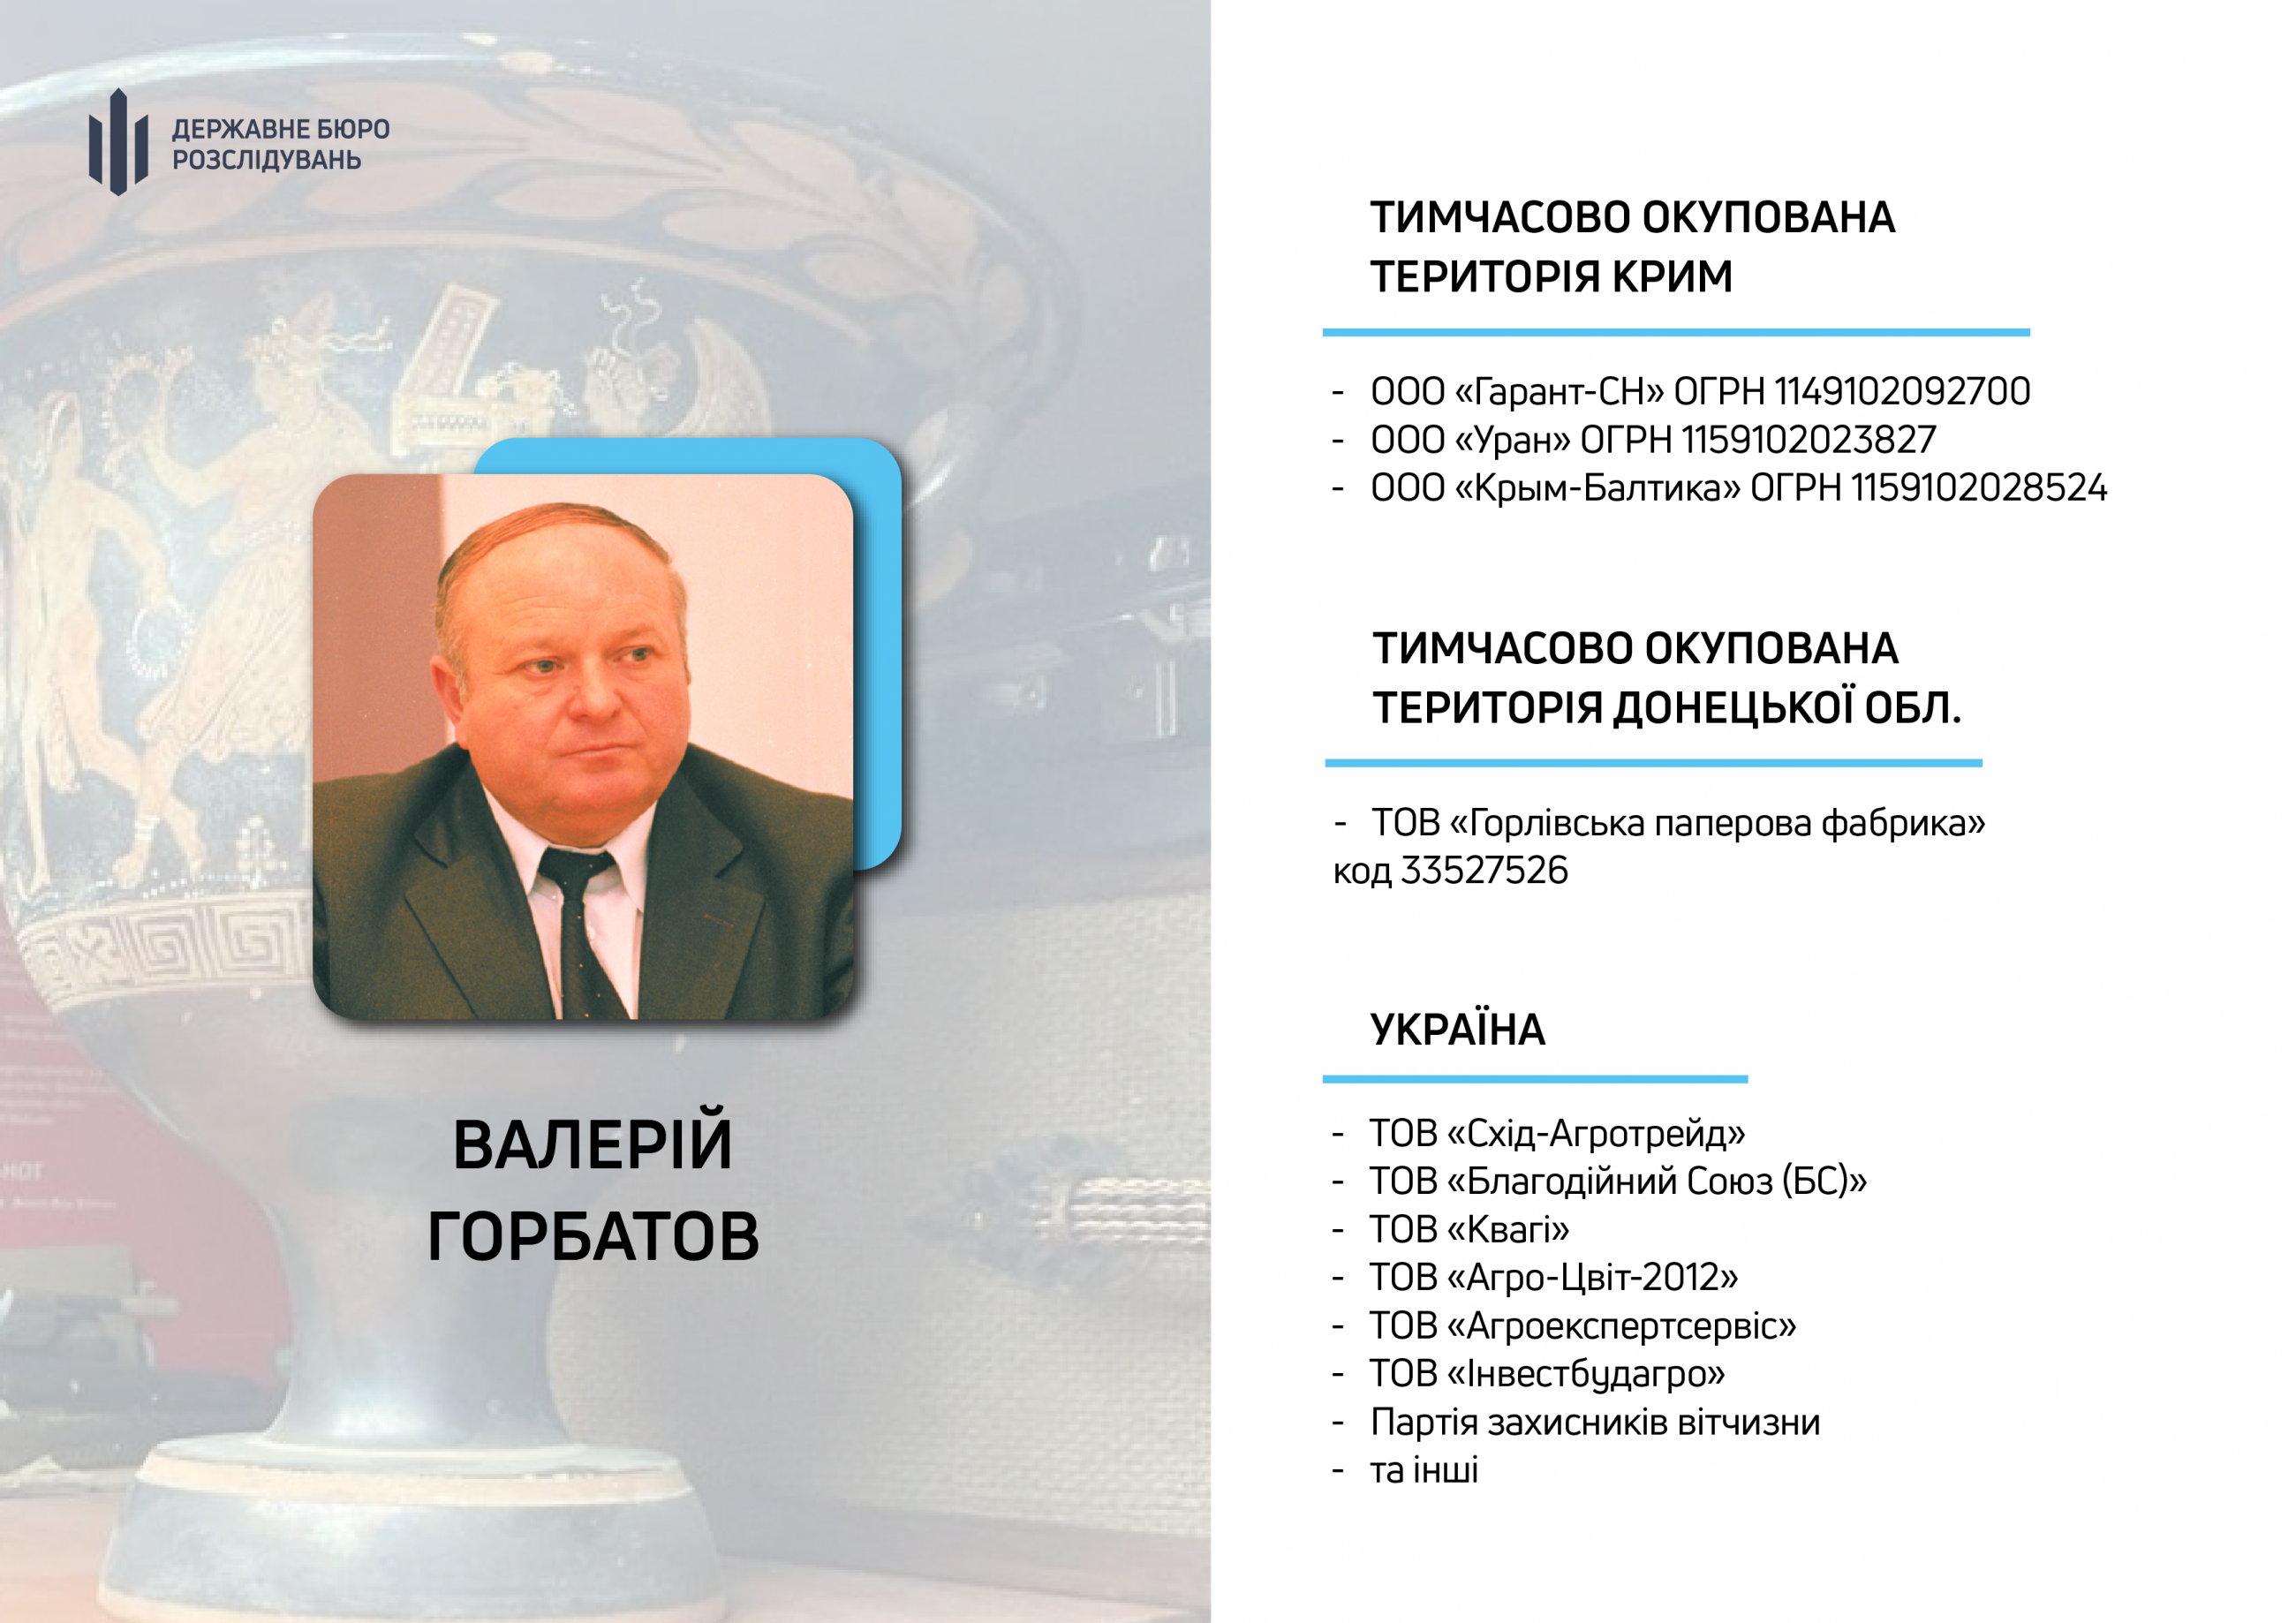 Предприятия, связанные с Валерием Горбатовым (инфографика ГБР)